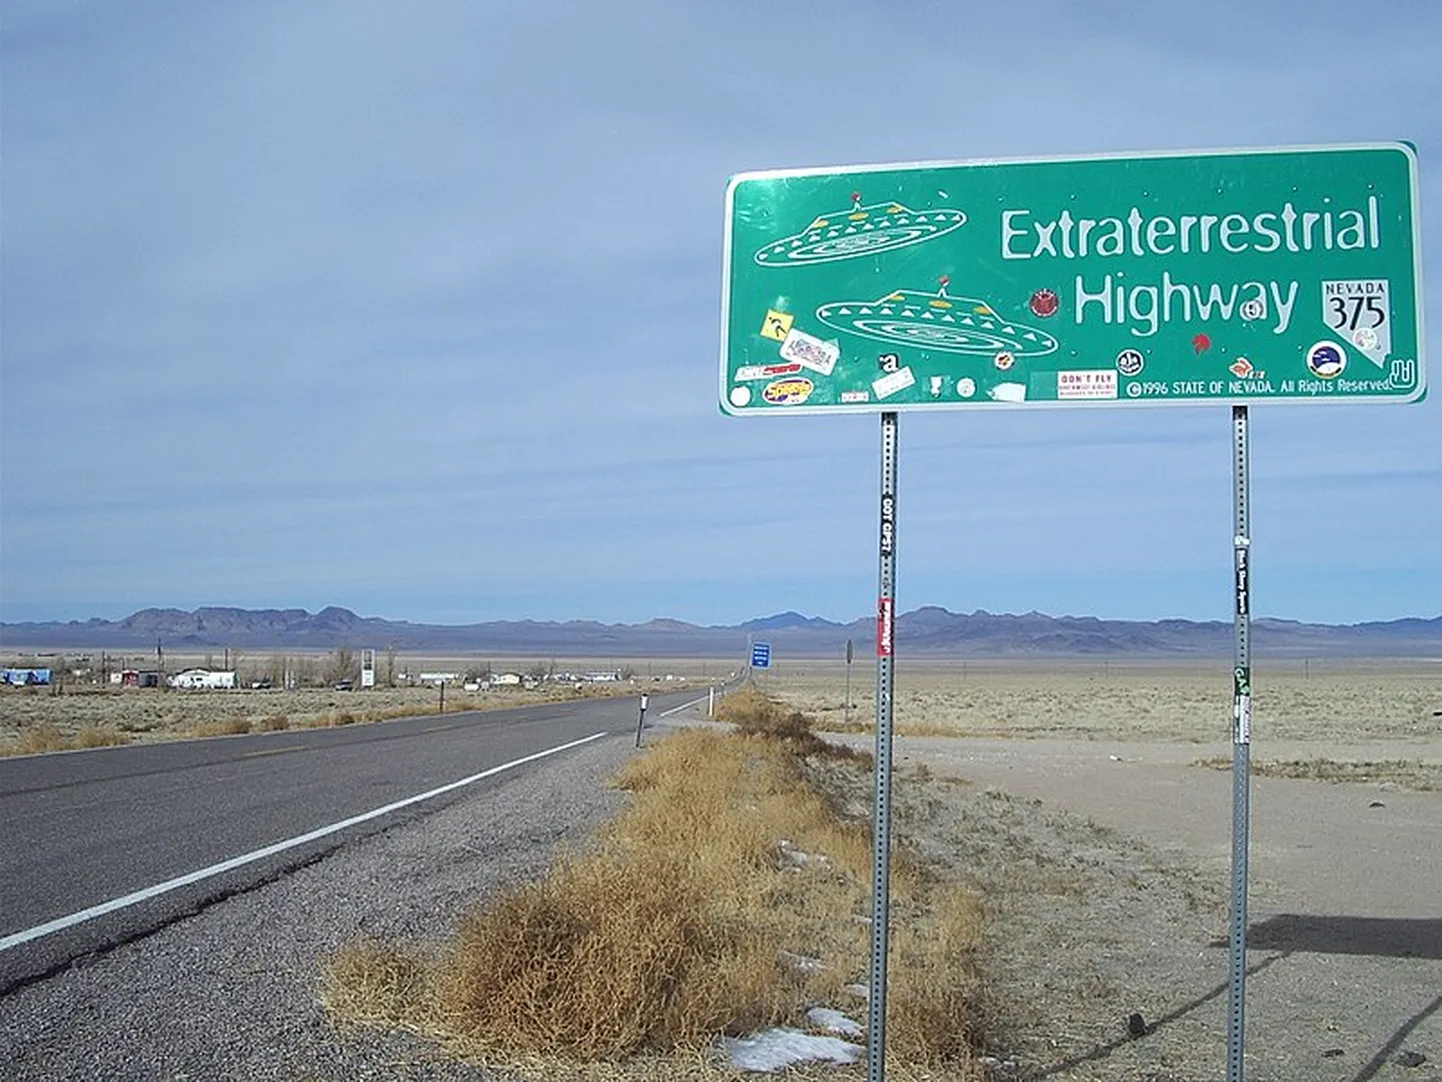 “Route 375” Nevadas štatā ir vienīgais publiski pieejamais ceļš, kas iet gar slaveno “Area 51” militāro bāzi, kurā notiek citplanētiešu kuģu izpēte